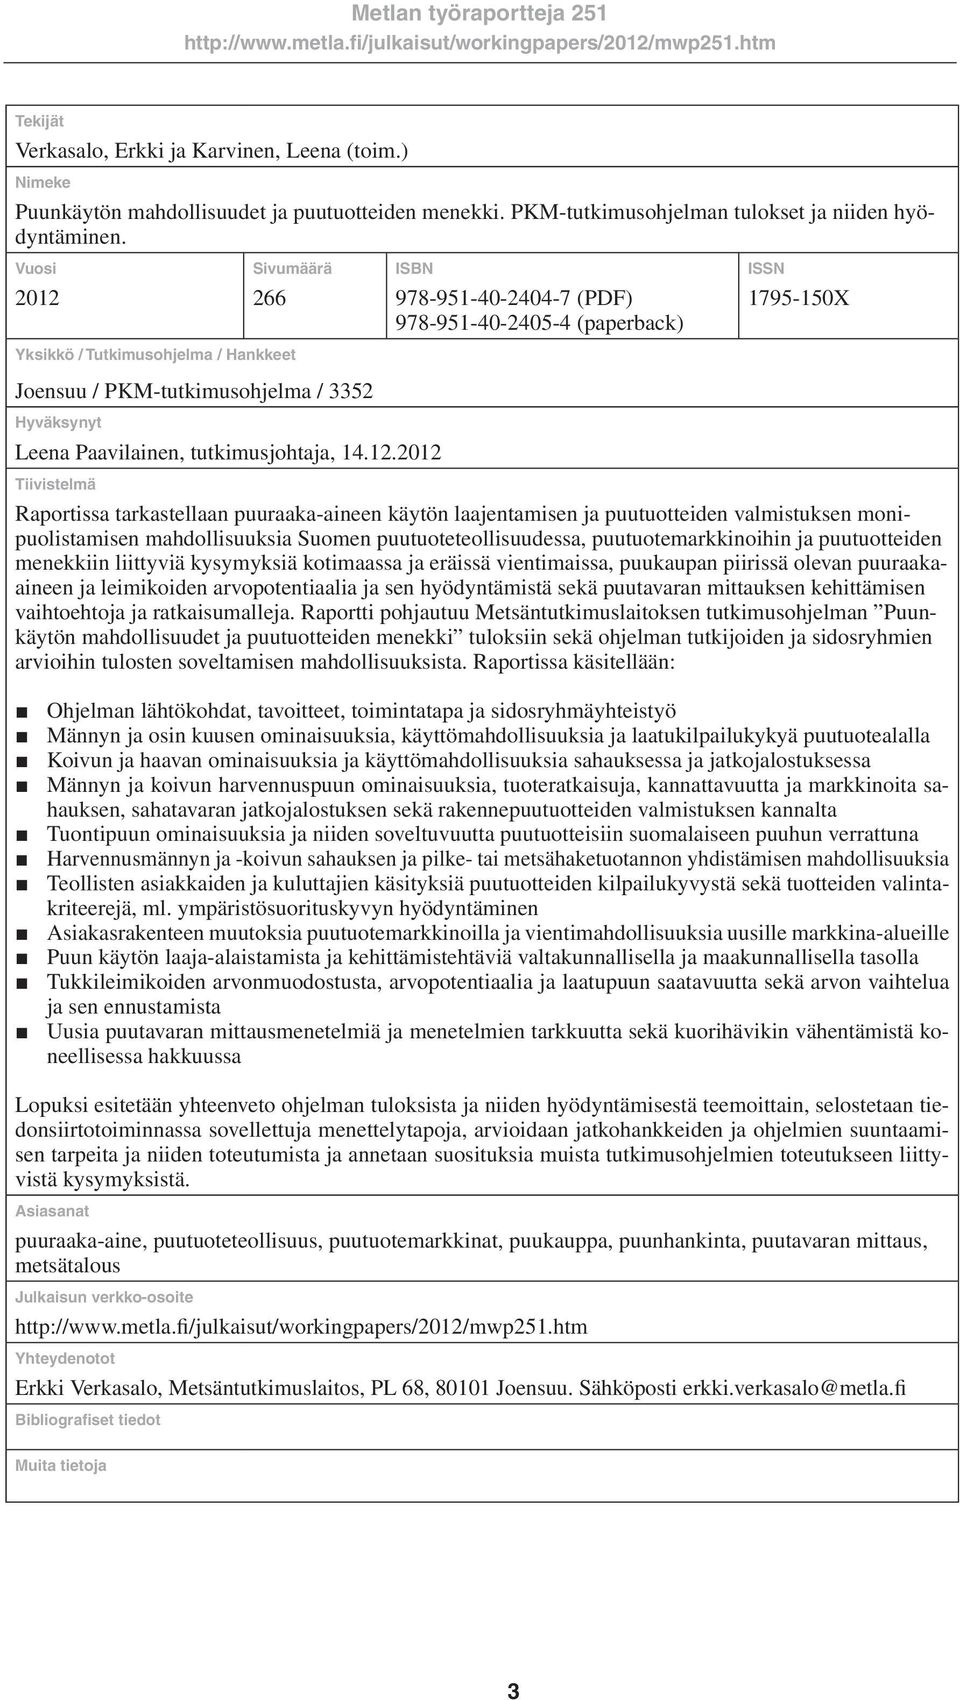 Sivumäärä 266 Yksikkö / Tutkimusohjelma / Hankkeet Joensuu / PKM-tutkimusohjelma / 3352 Hyväksynyt ISBN Leena Paavilainen, tutkimusjohtaja, 14.12.